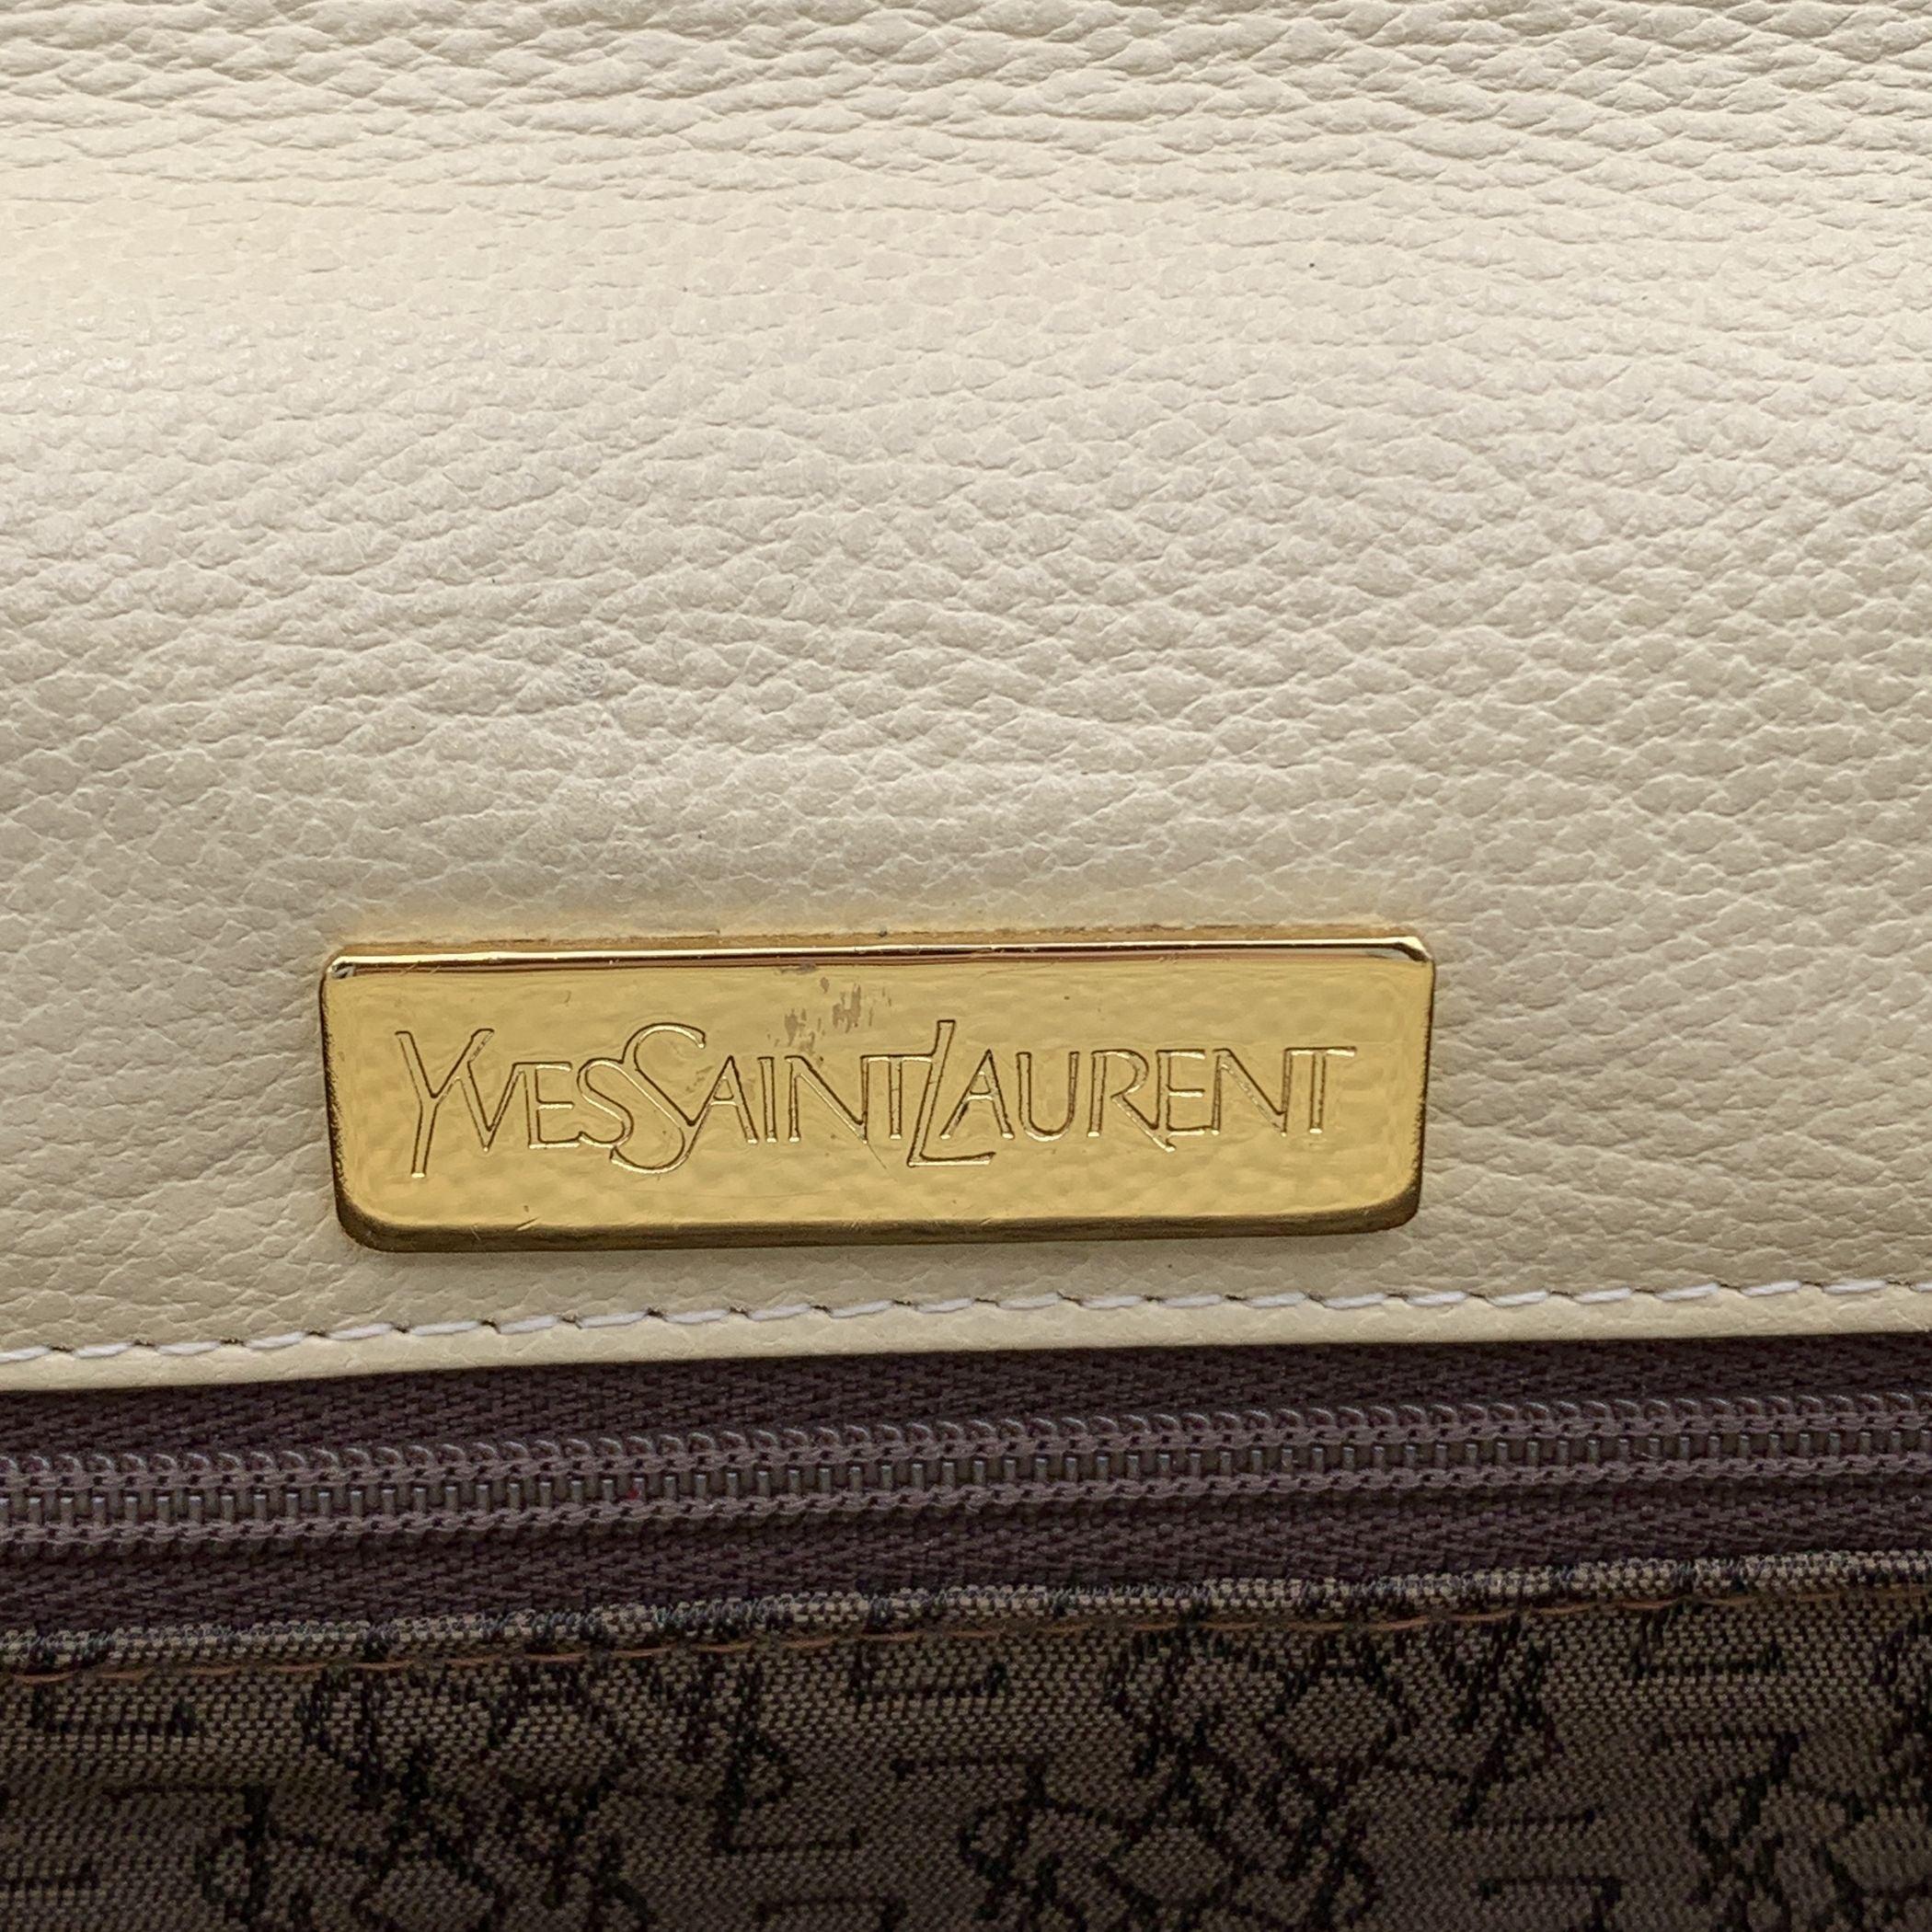 Yves Saint Laurent Vintage Beige Leather Clutch Bag Handbag 2